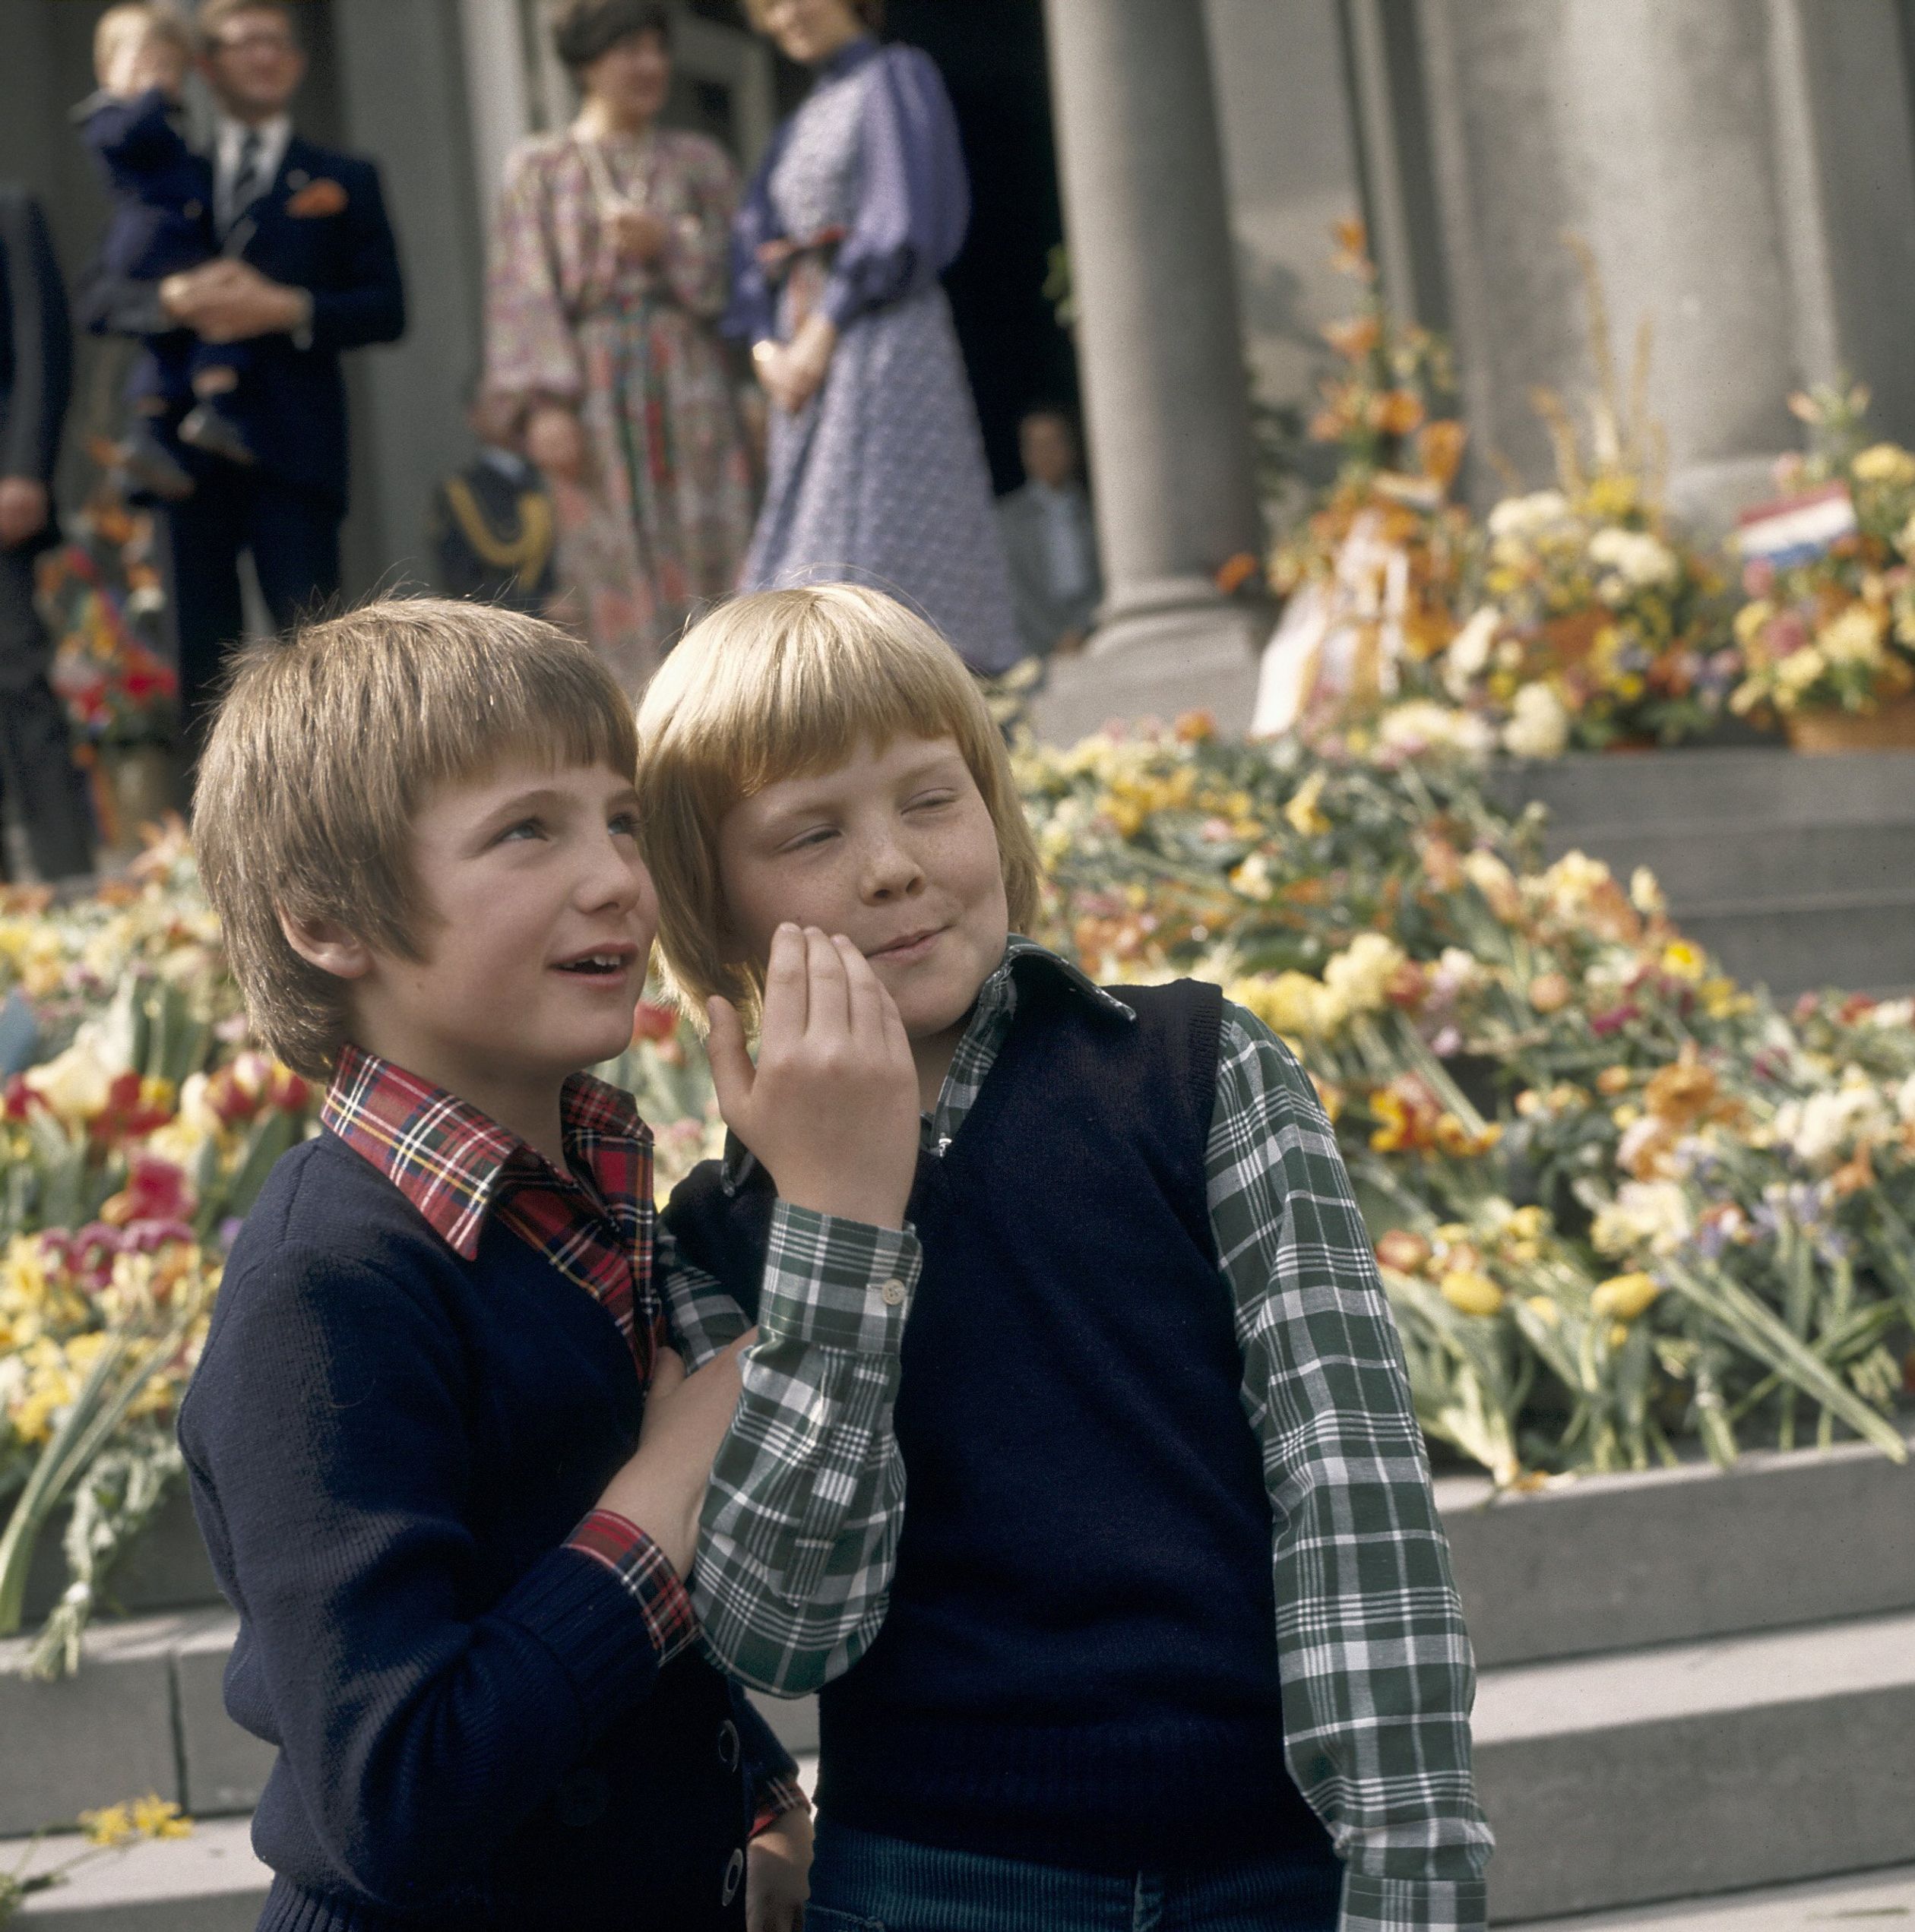 30 april 1977: Koninginnedag op Paleis Soestdijk samen met neef Willem-Alexander. Wat staan de twee